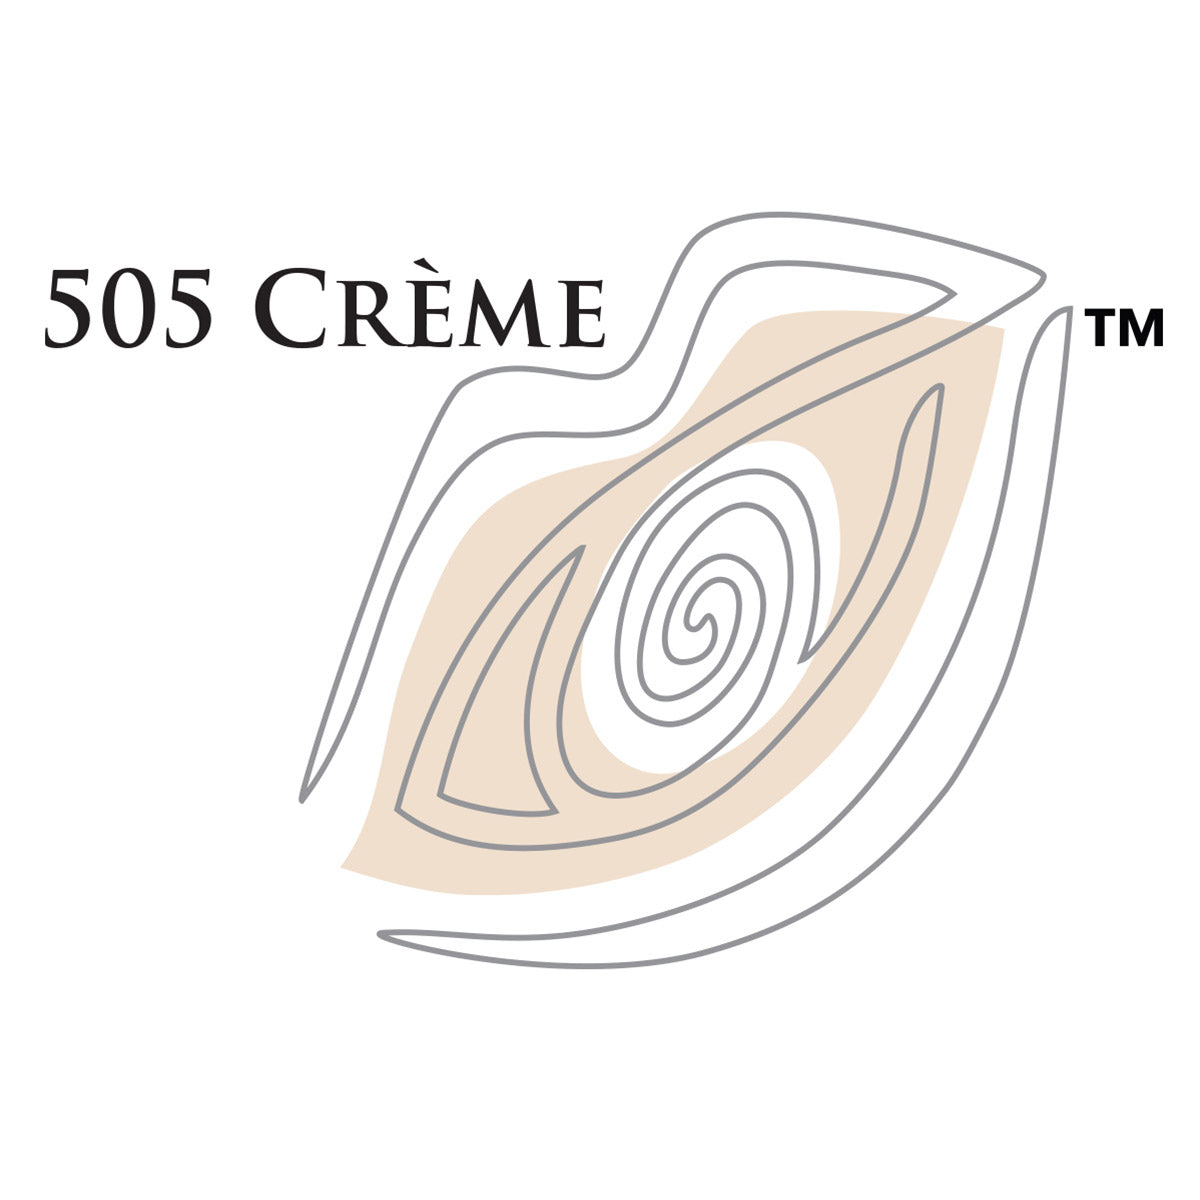 505 Crème  / Cream 20ml